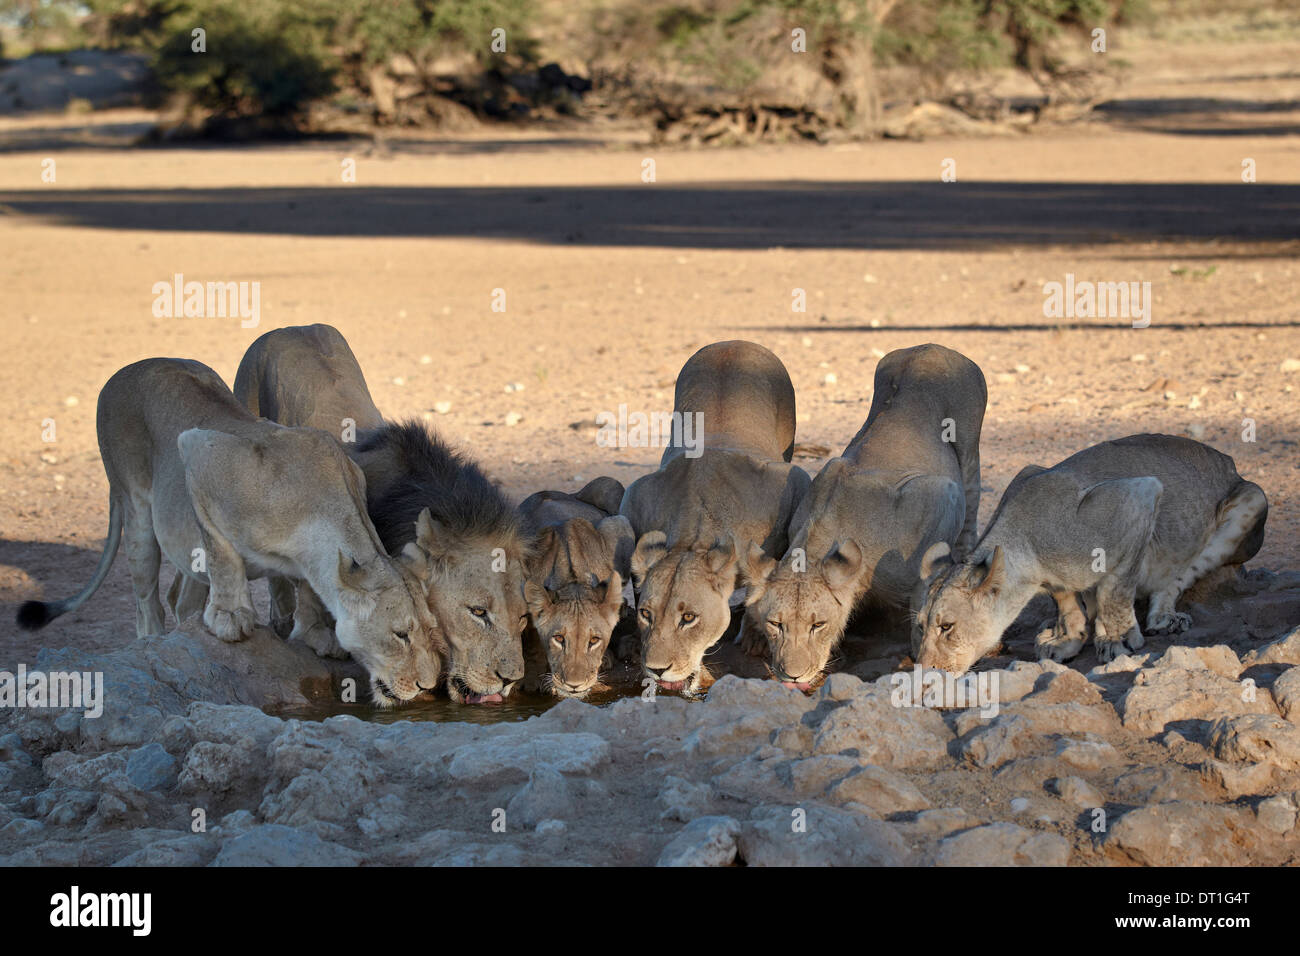 Lion (Panthera leo) famille de boire, Kgalagadi Transfrontier Park, l'ancien parc national de Kalahari Gemsbok, Afrique du Sud Banque D'Images